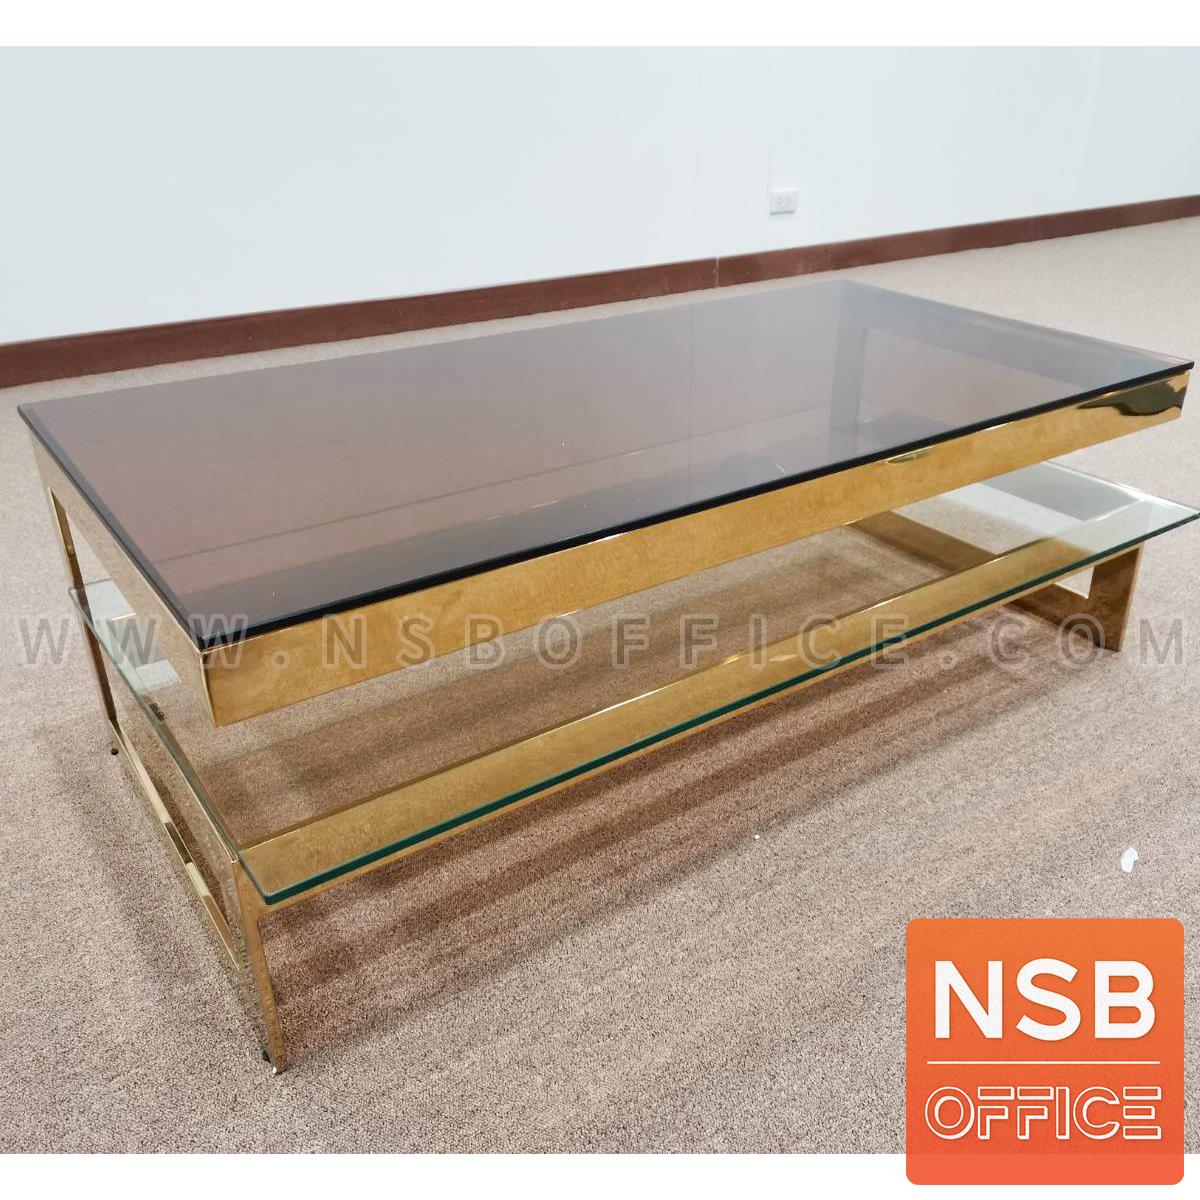 B13A315:โต๊ะกลางกระจกสีบรอนซ์ รุ่น Safefine (เซฟไฟน์)  โครงสเตนเลสเคลือบทอง